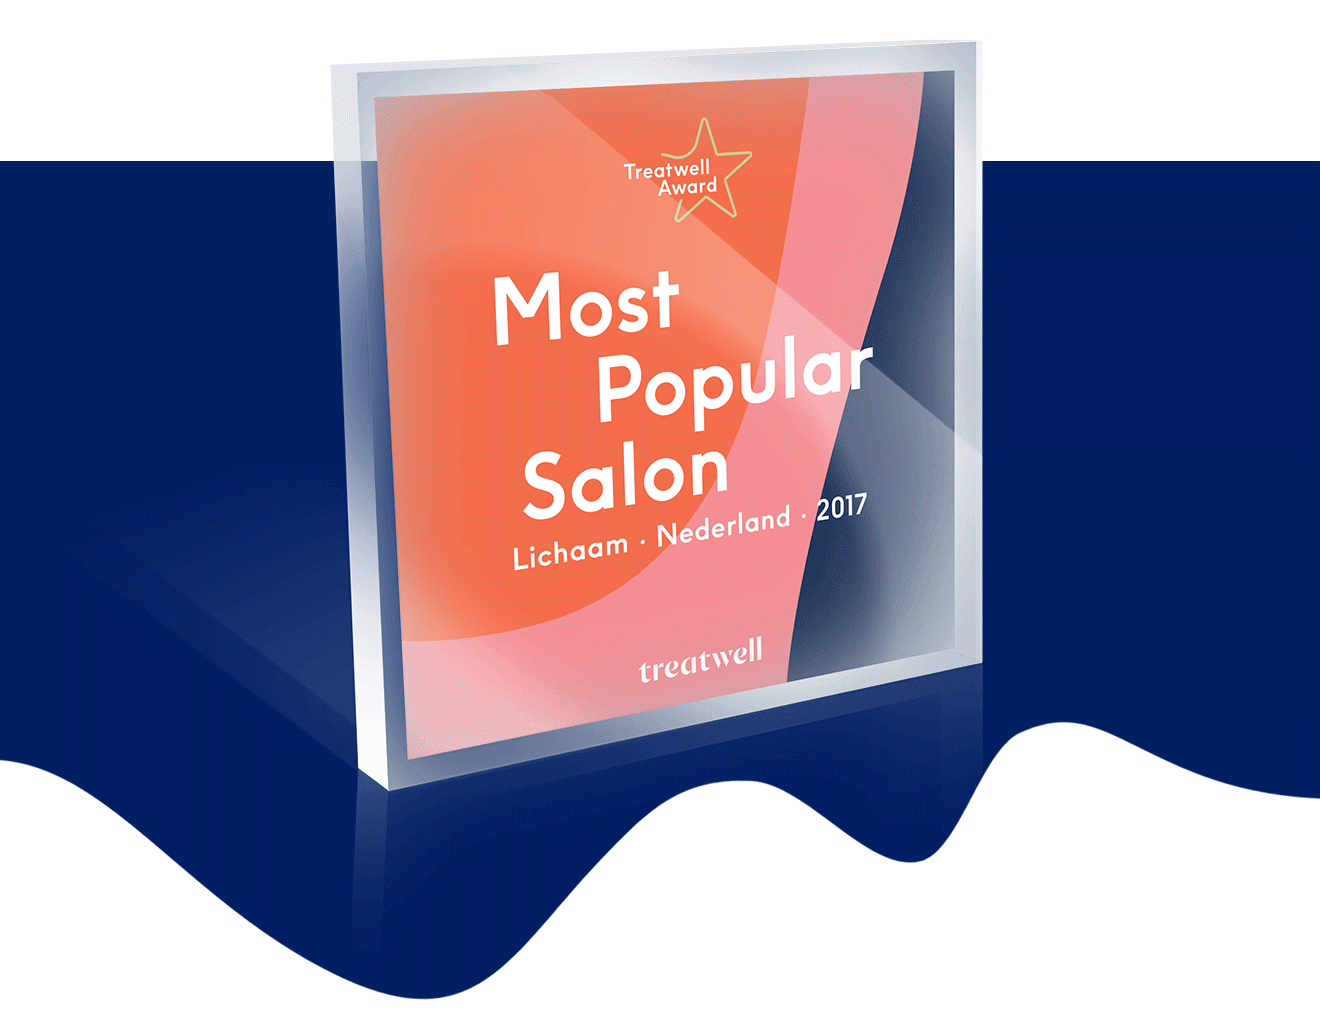 Utsukusy Schoonheidssalon is Most Popular Salon 2017